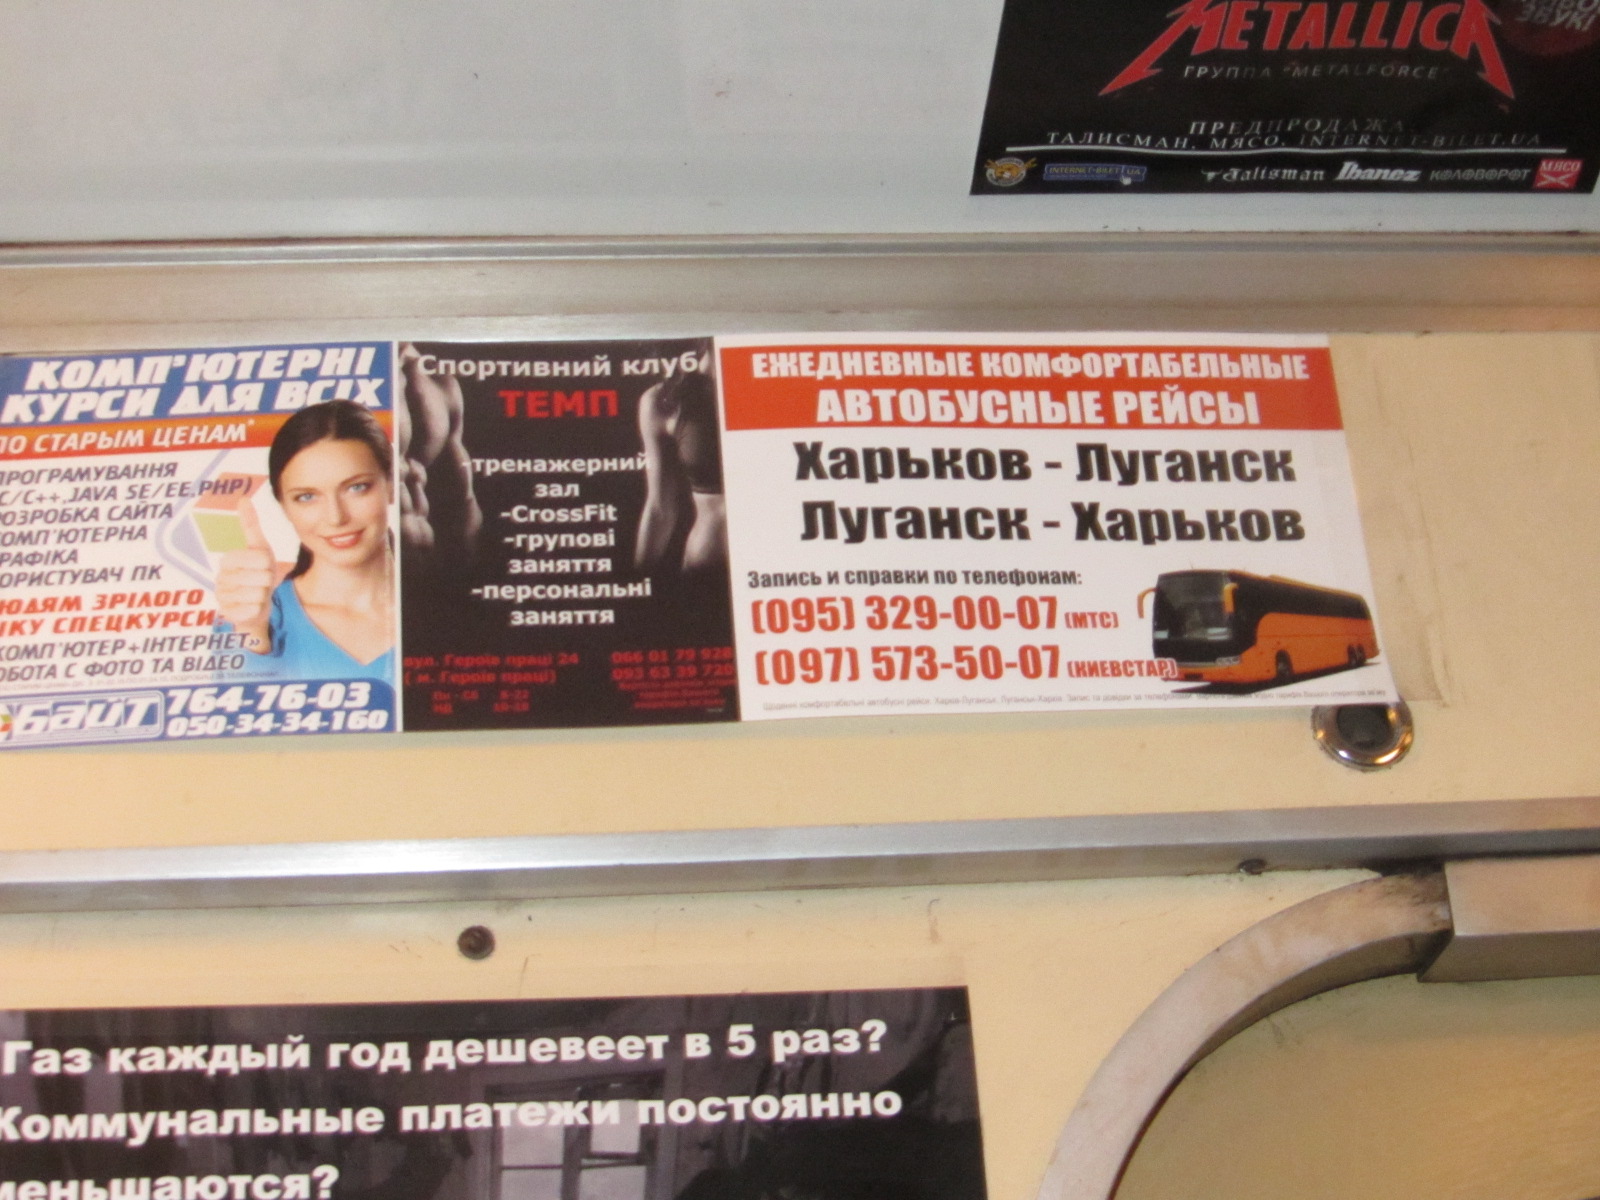 Разместить рекламу в вагонах метро